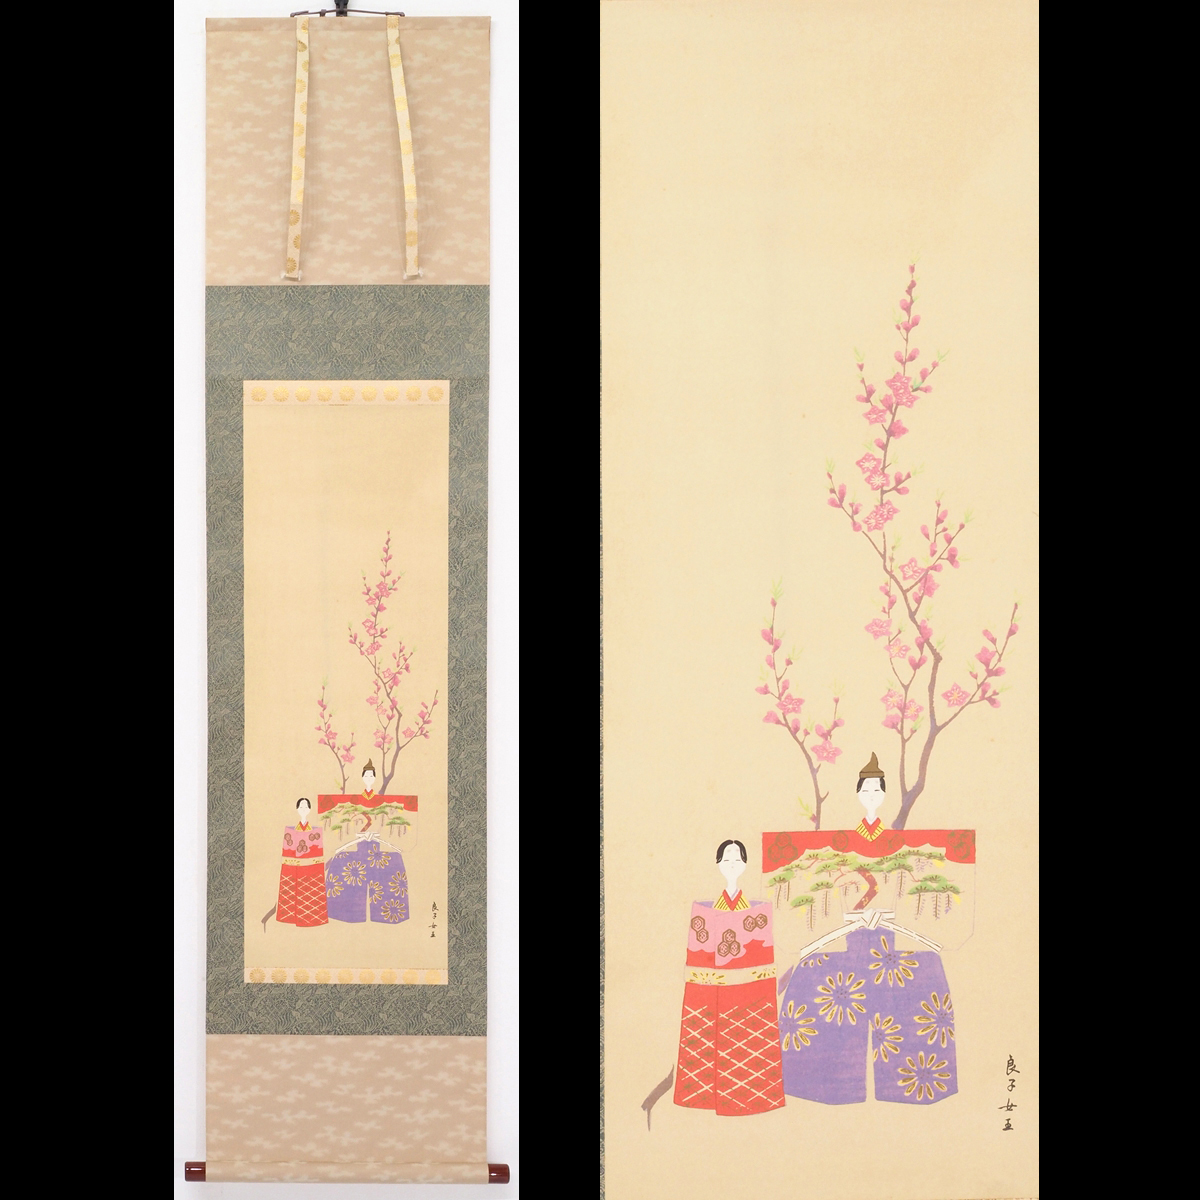 [복제] [와타리칸] [고준 황후] 8528 정가 250, 000엔 족자 일본화 히나 인형 그림 이중 상자 두꺼운 족자 종이책 구니노미야 왕자의 첫째 딸 구니히코 축제 서명, 그림, 일본화, 사람, 보살